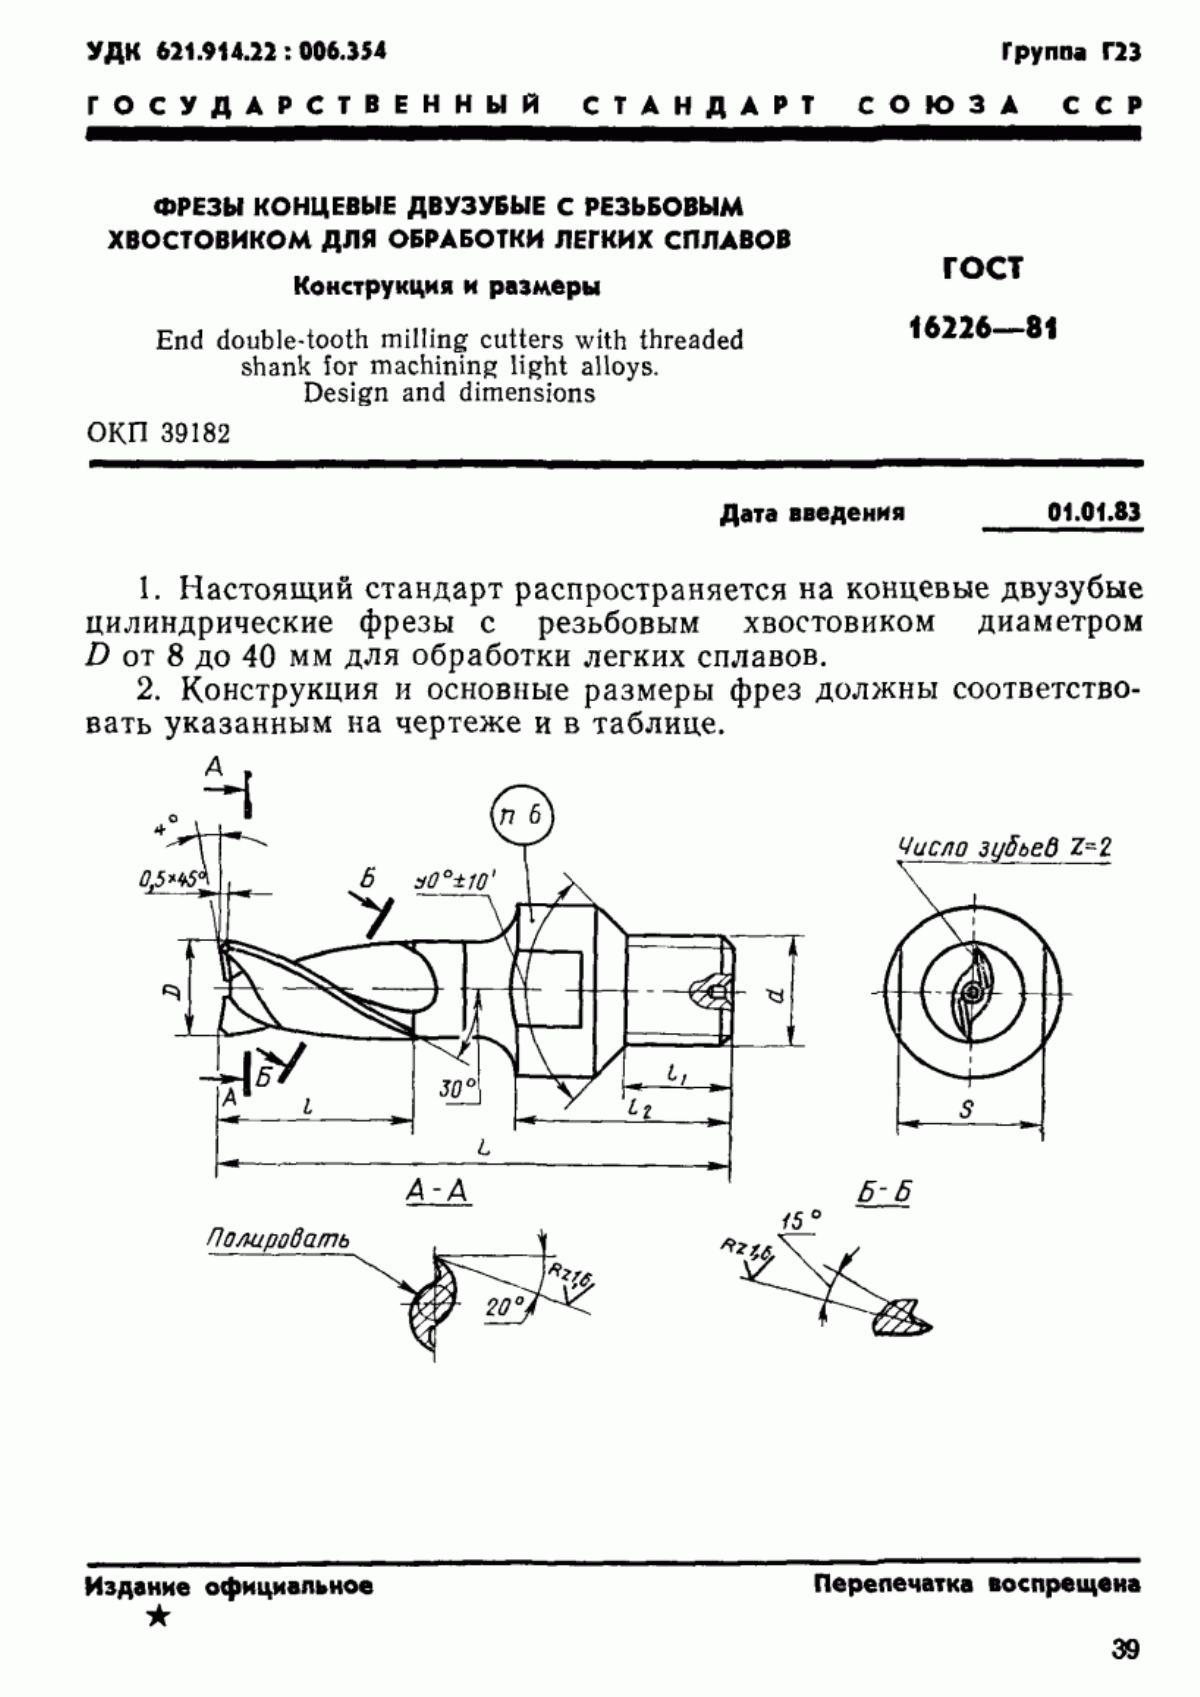 ГОСТ 16226-81 Фрезы концевые двузубые с резьбовым хвостовиком для обработки легких сплавов. Конструкция и размеры